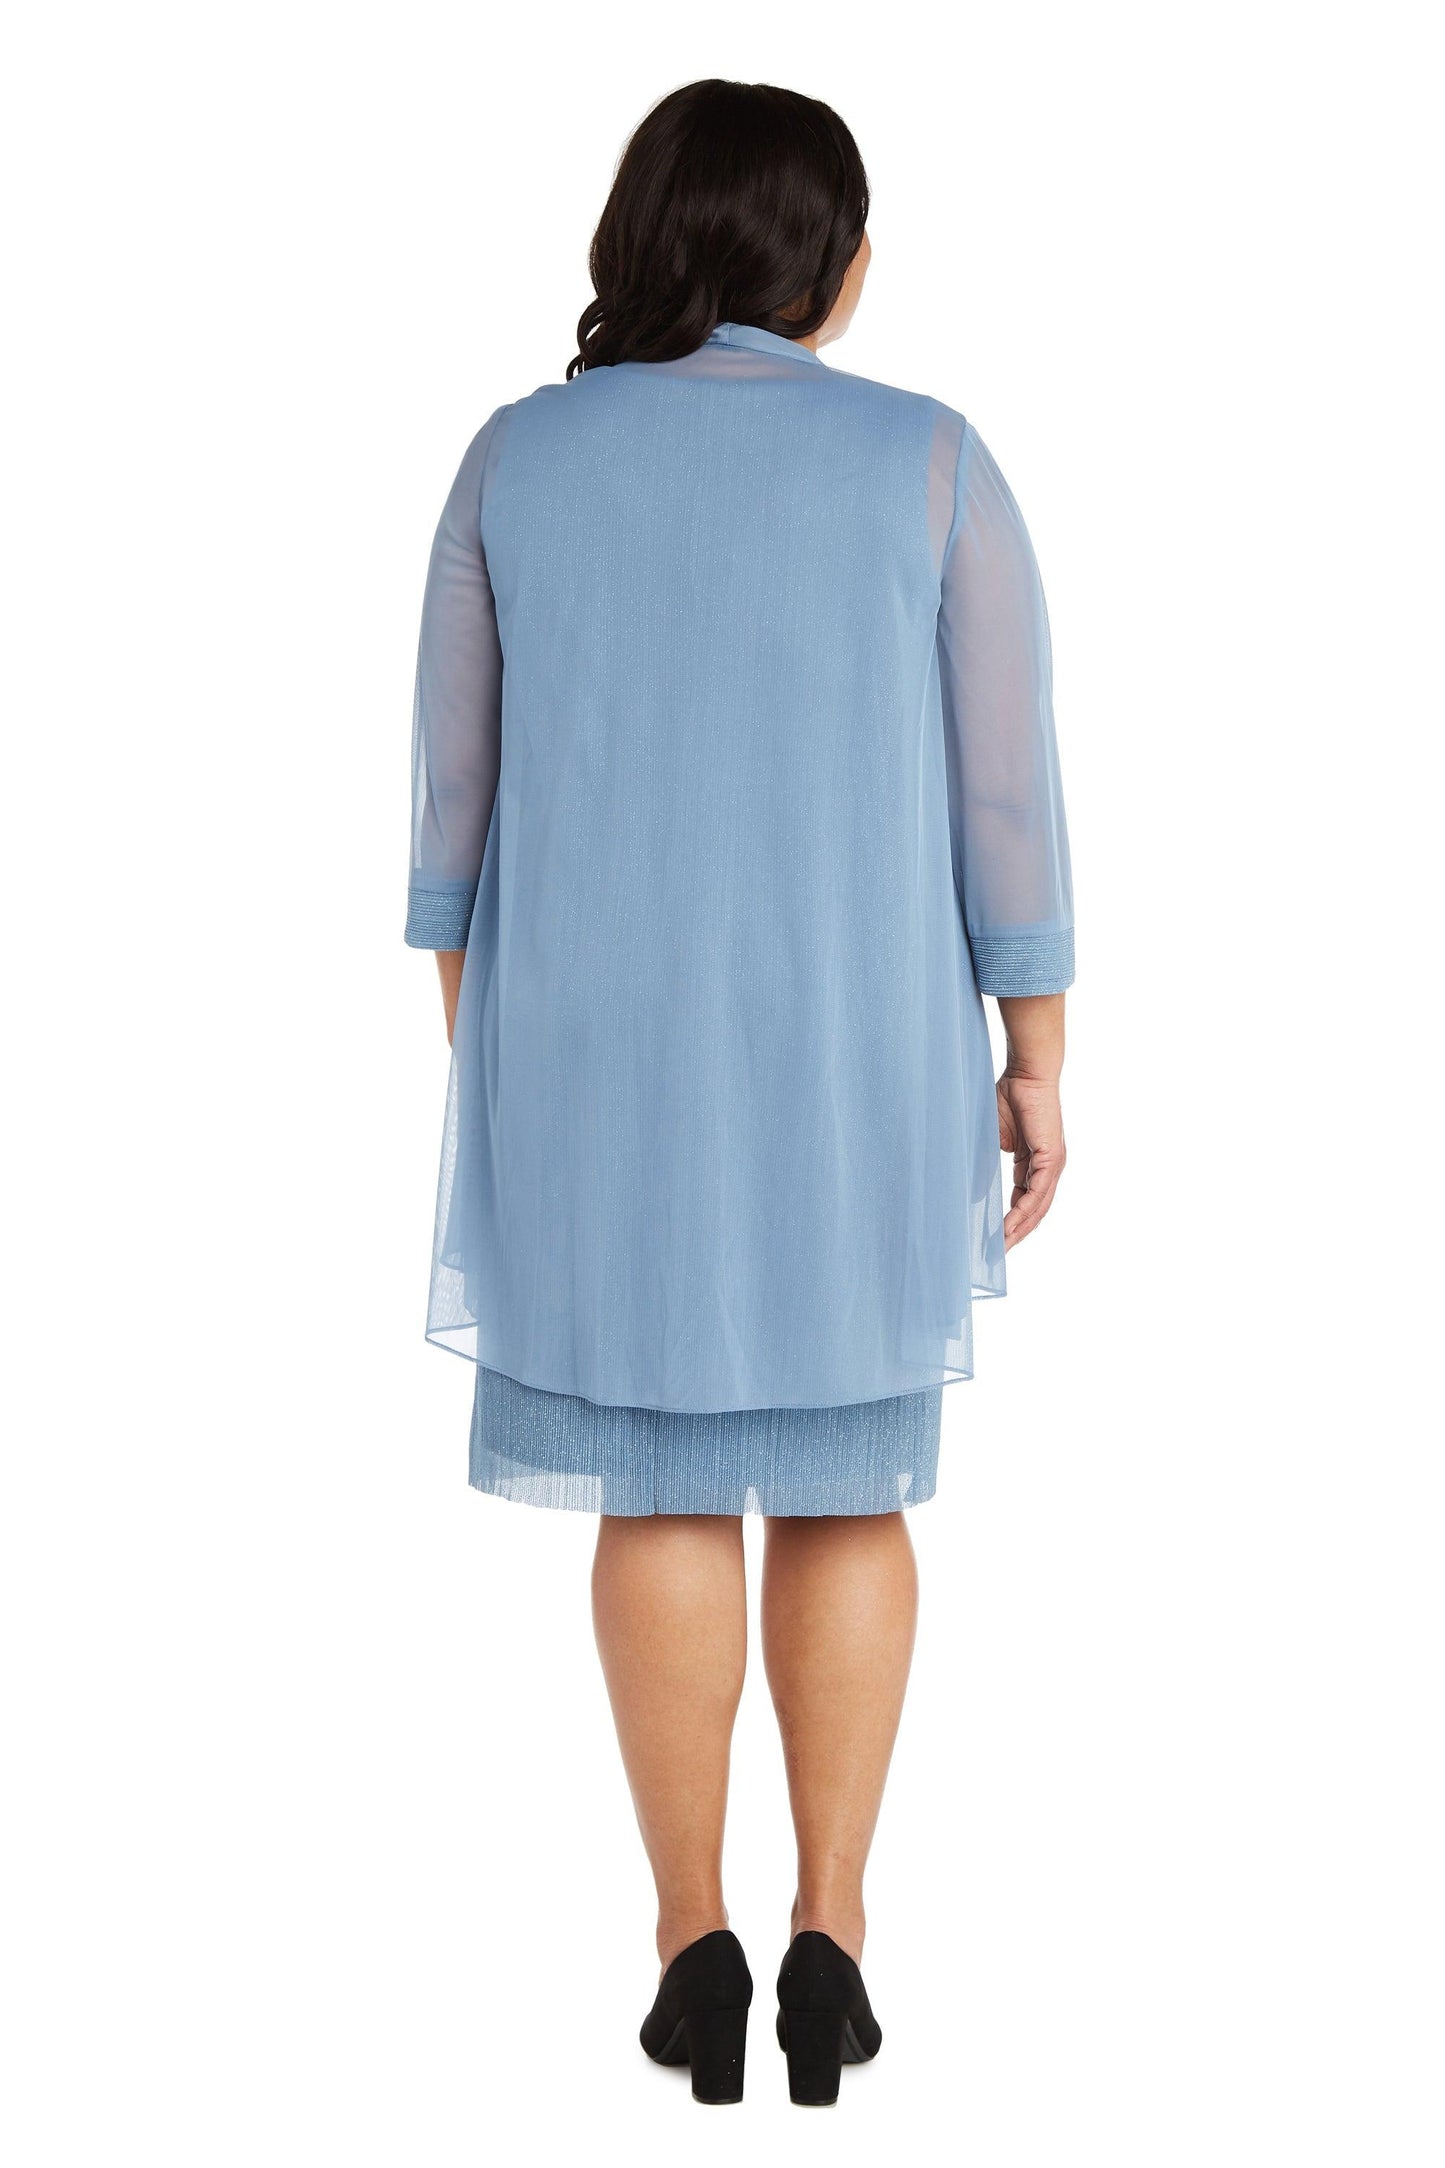 R&M Richards Short Plus Size Dress 2583W - The Dress Outlet